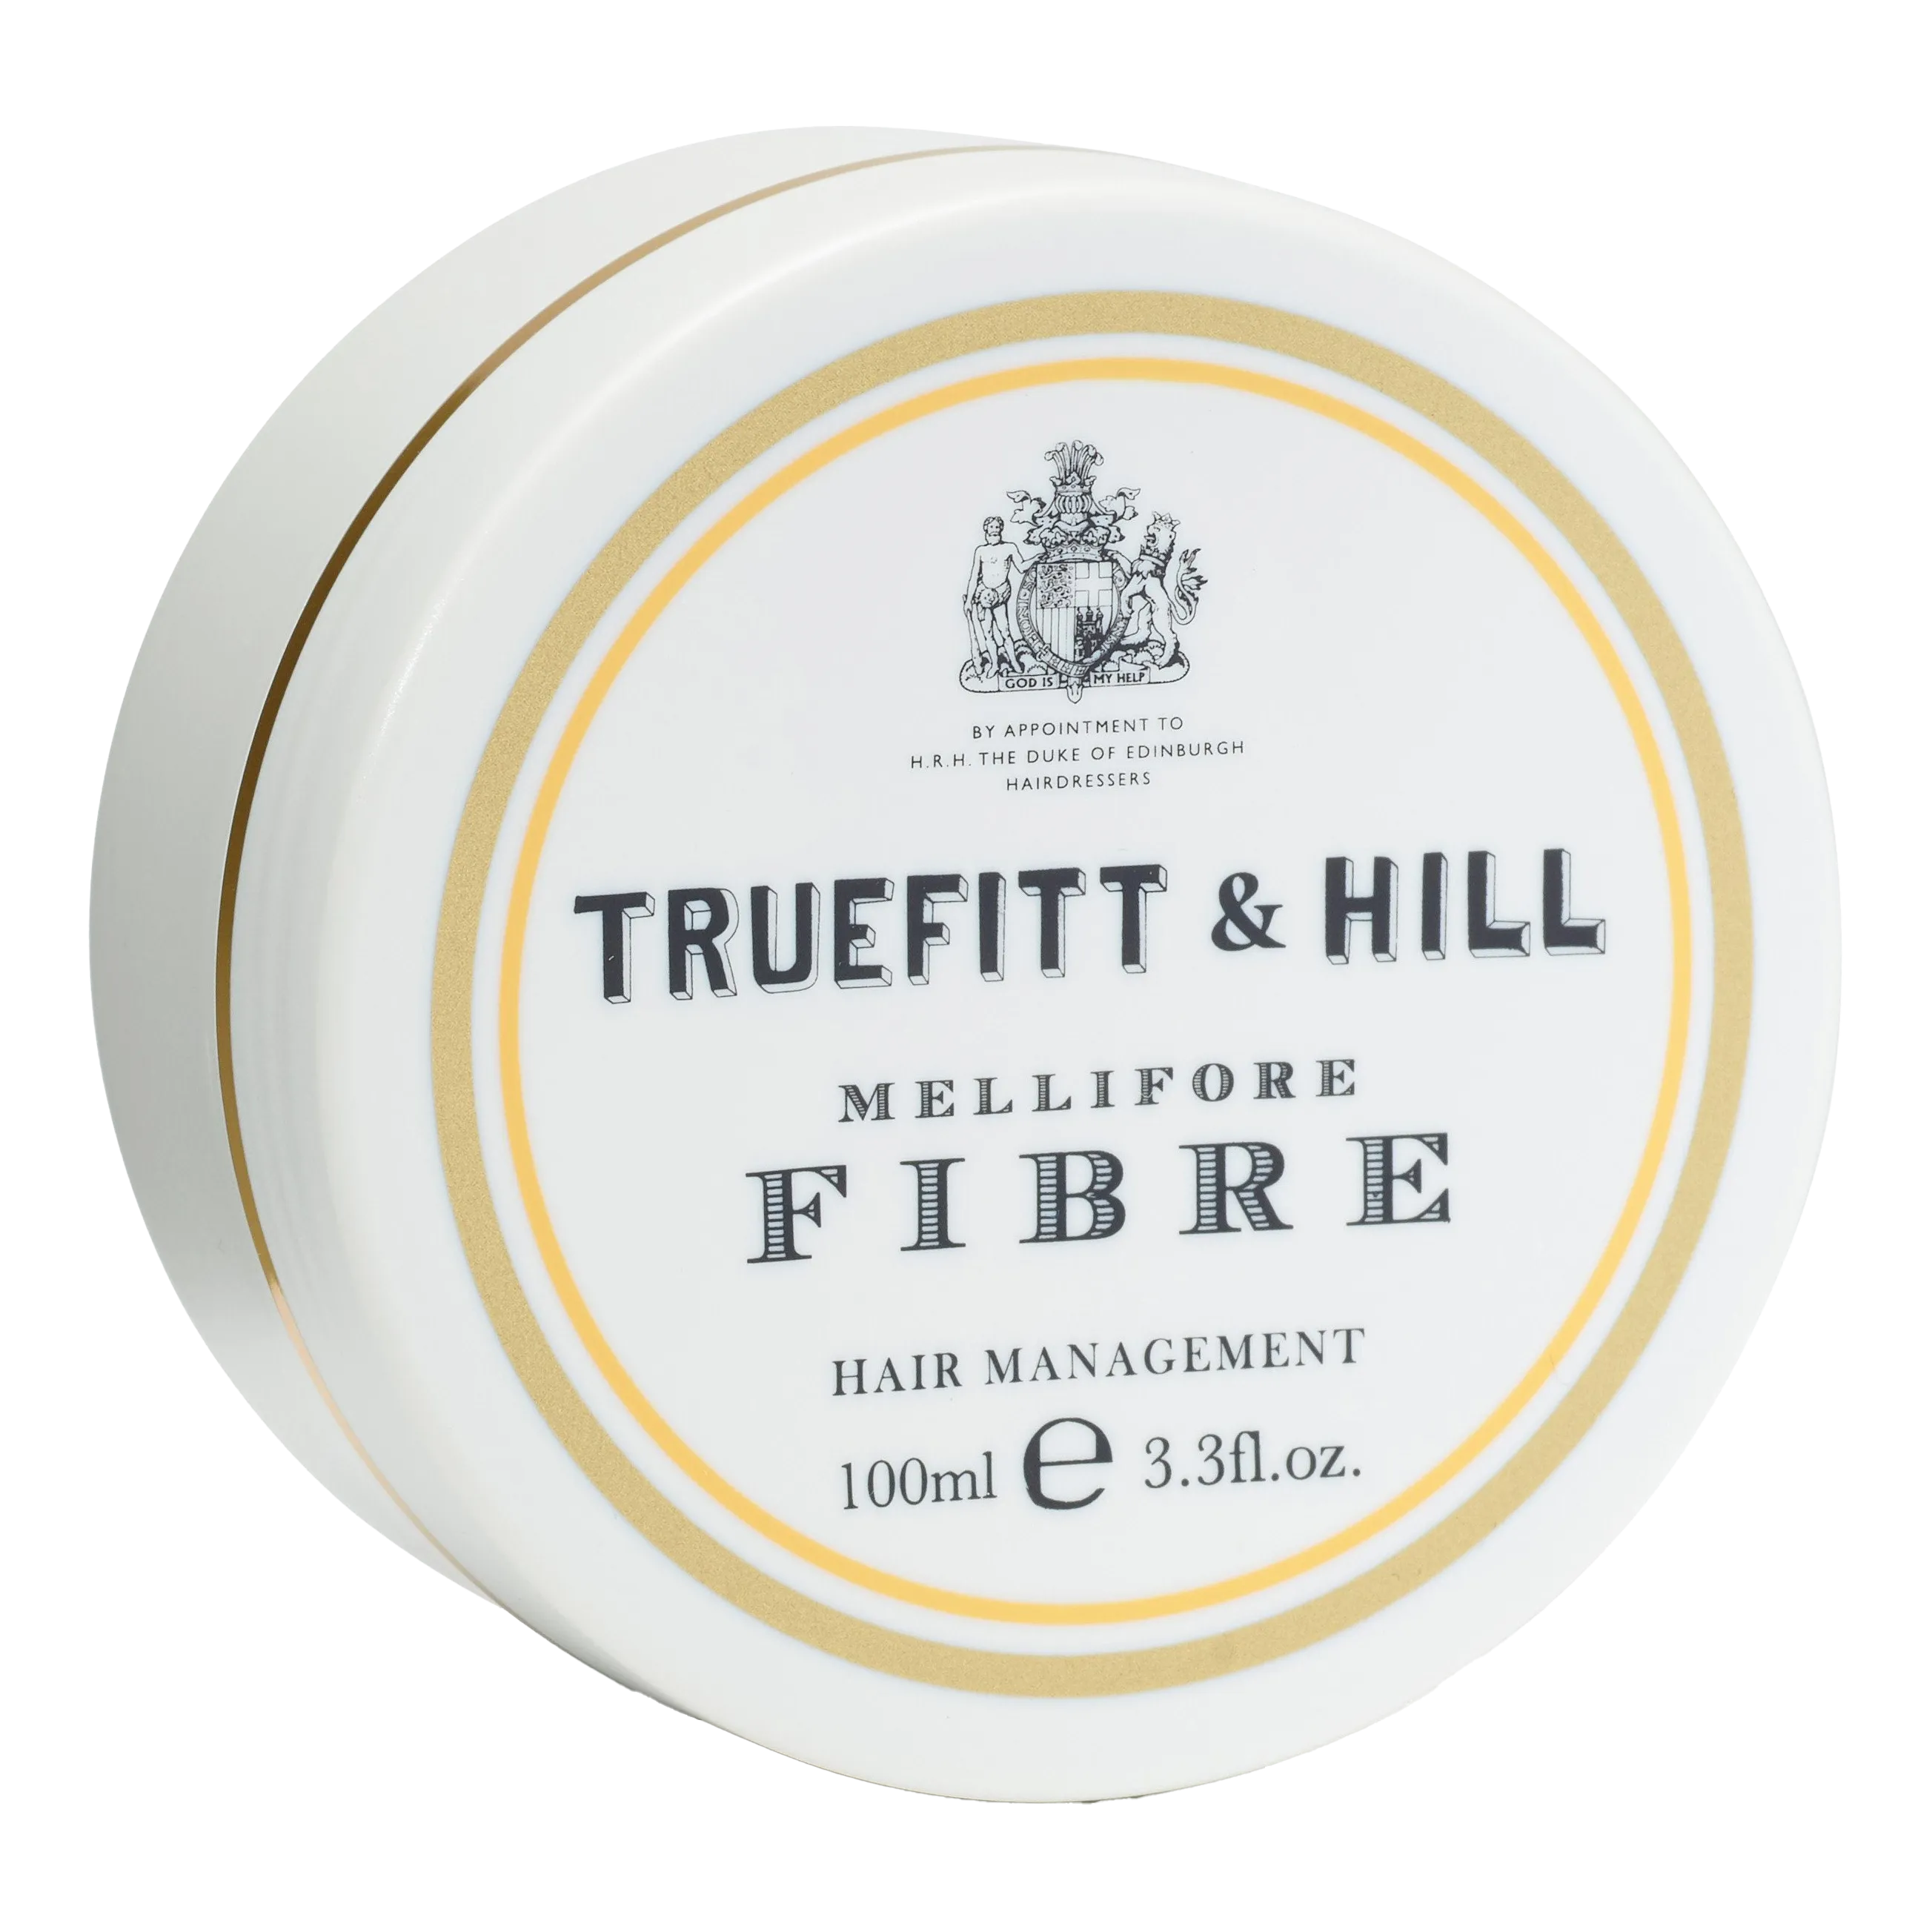 Truefitt & Hill Hair Management Mellifore Fibre 